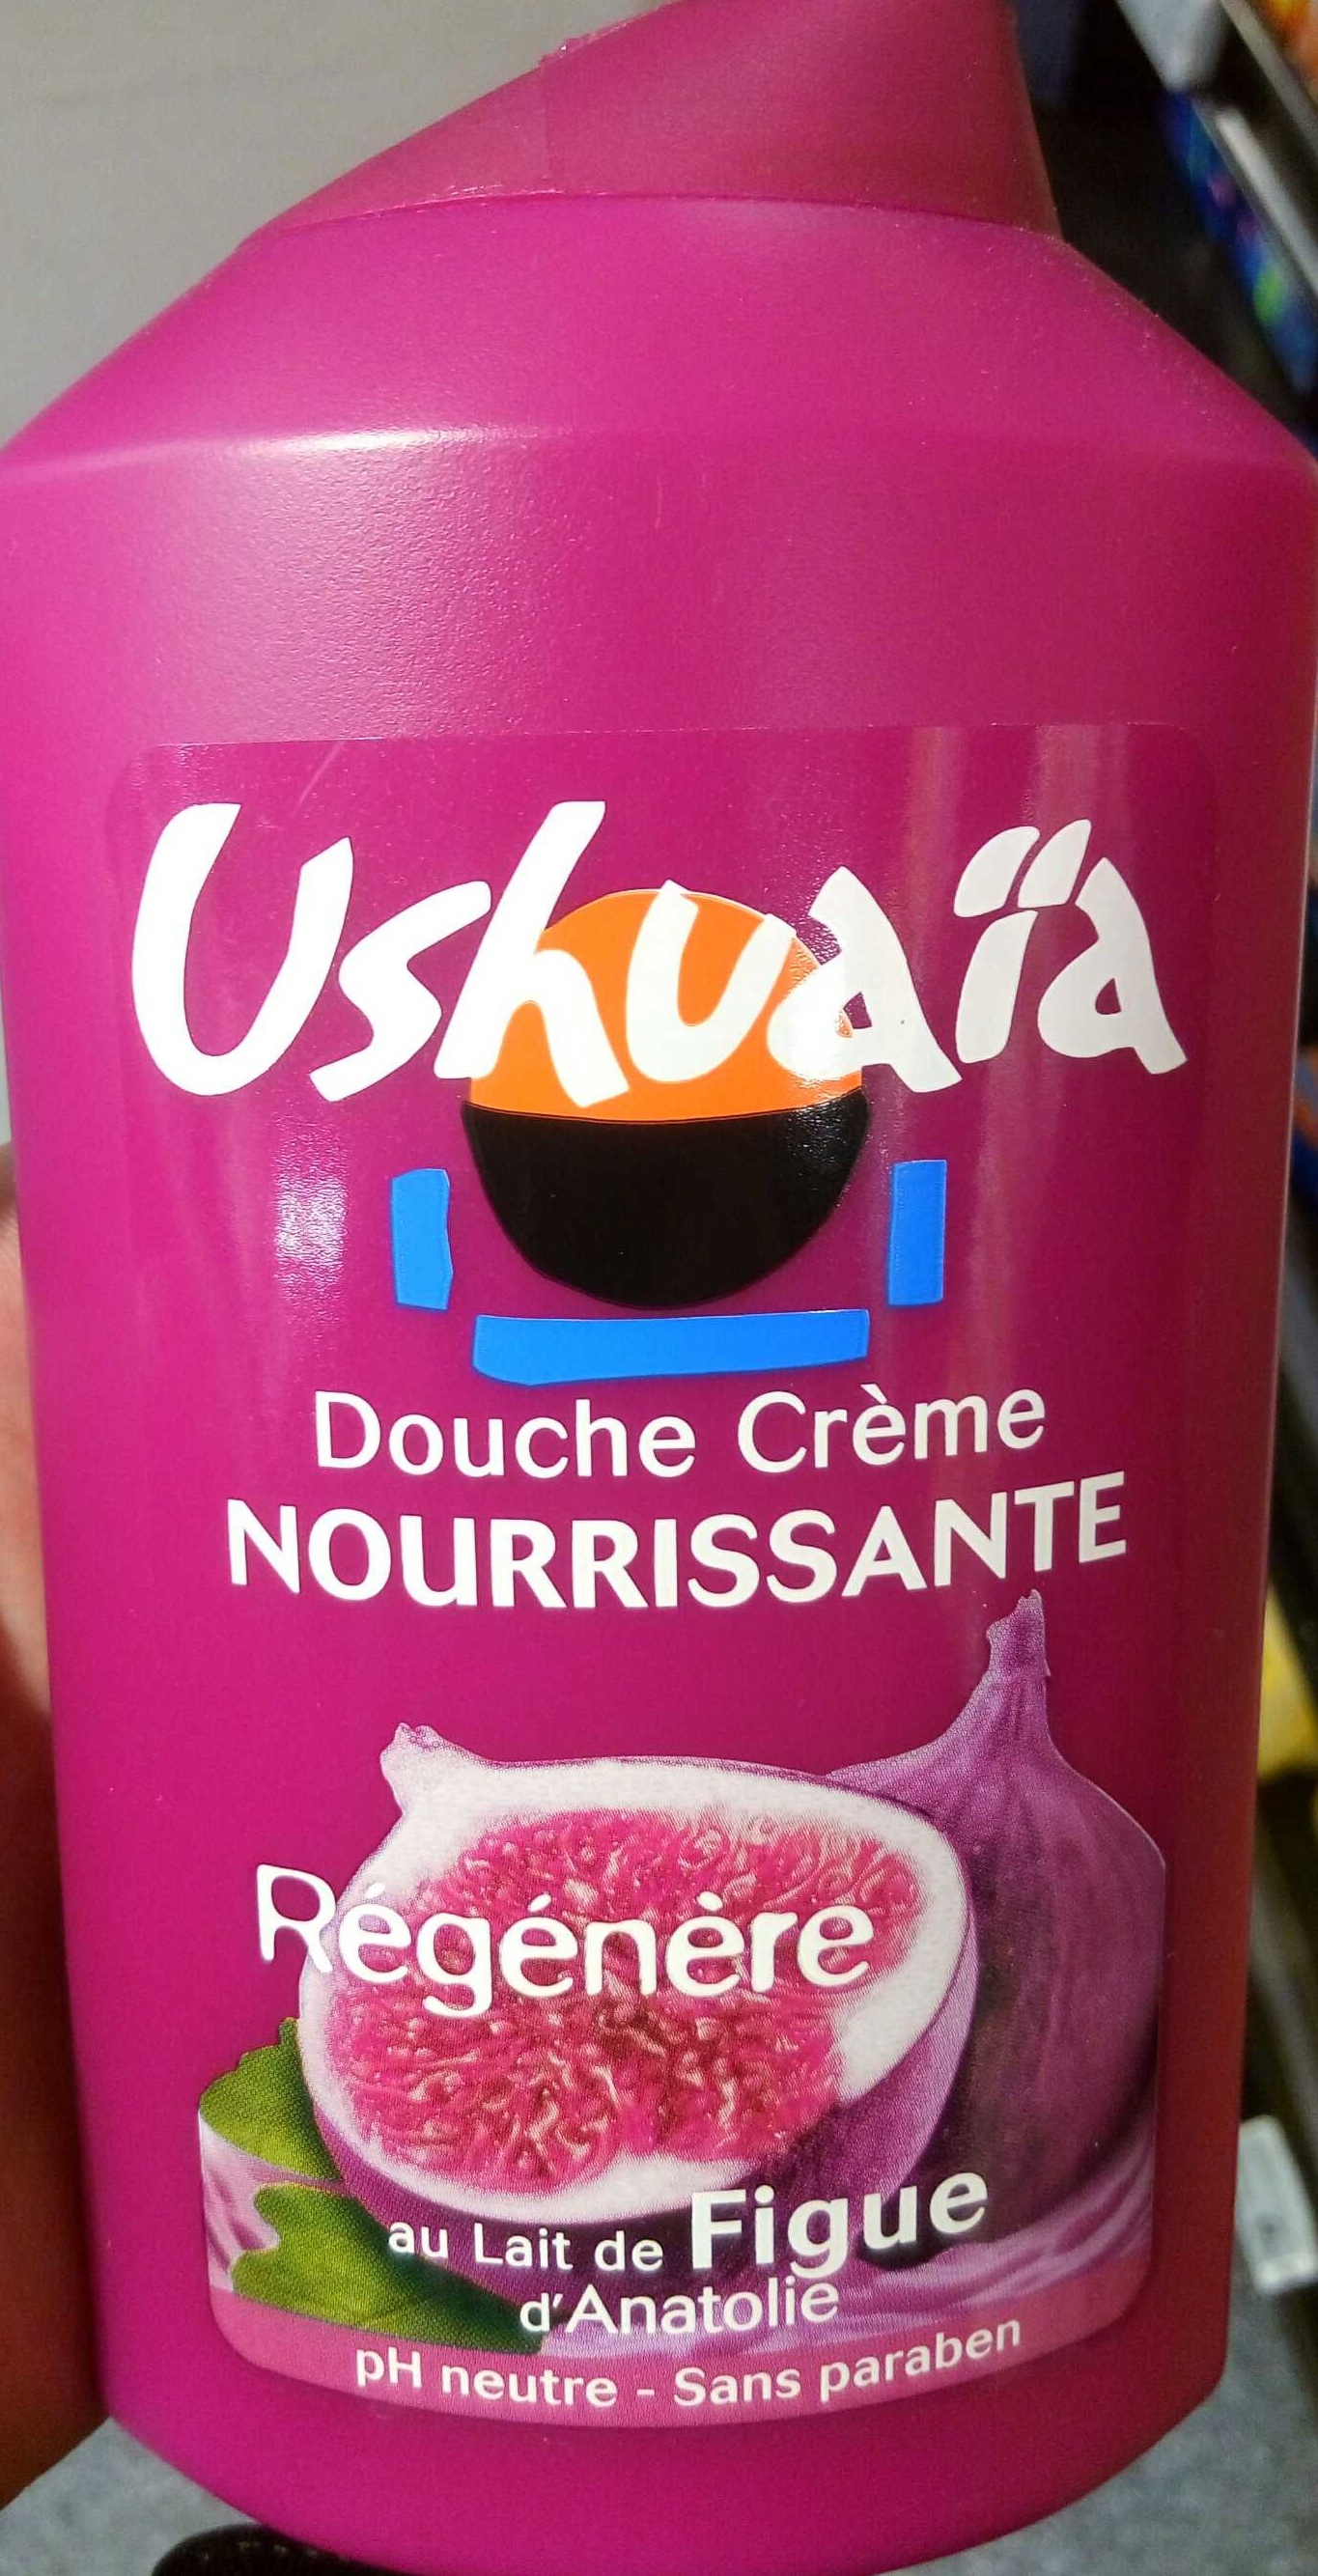 Douche Crème Nourissante au lait de Figue d'Anatolie - Продукт - fr